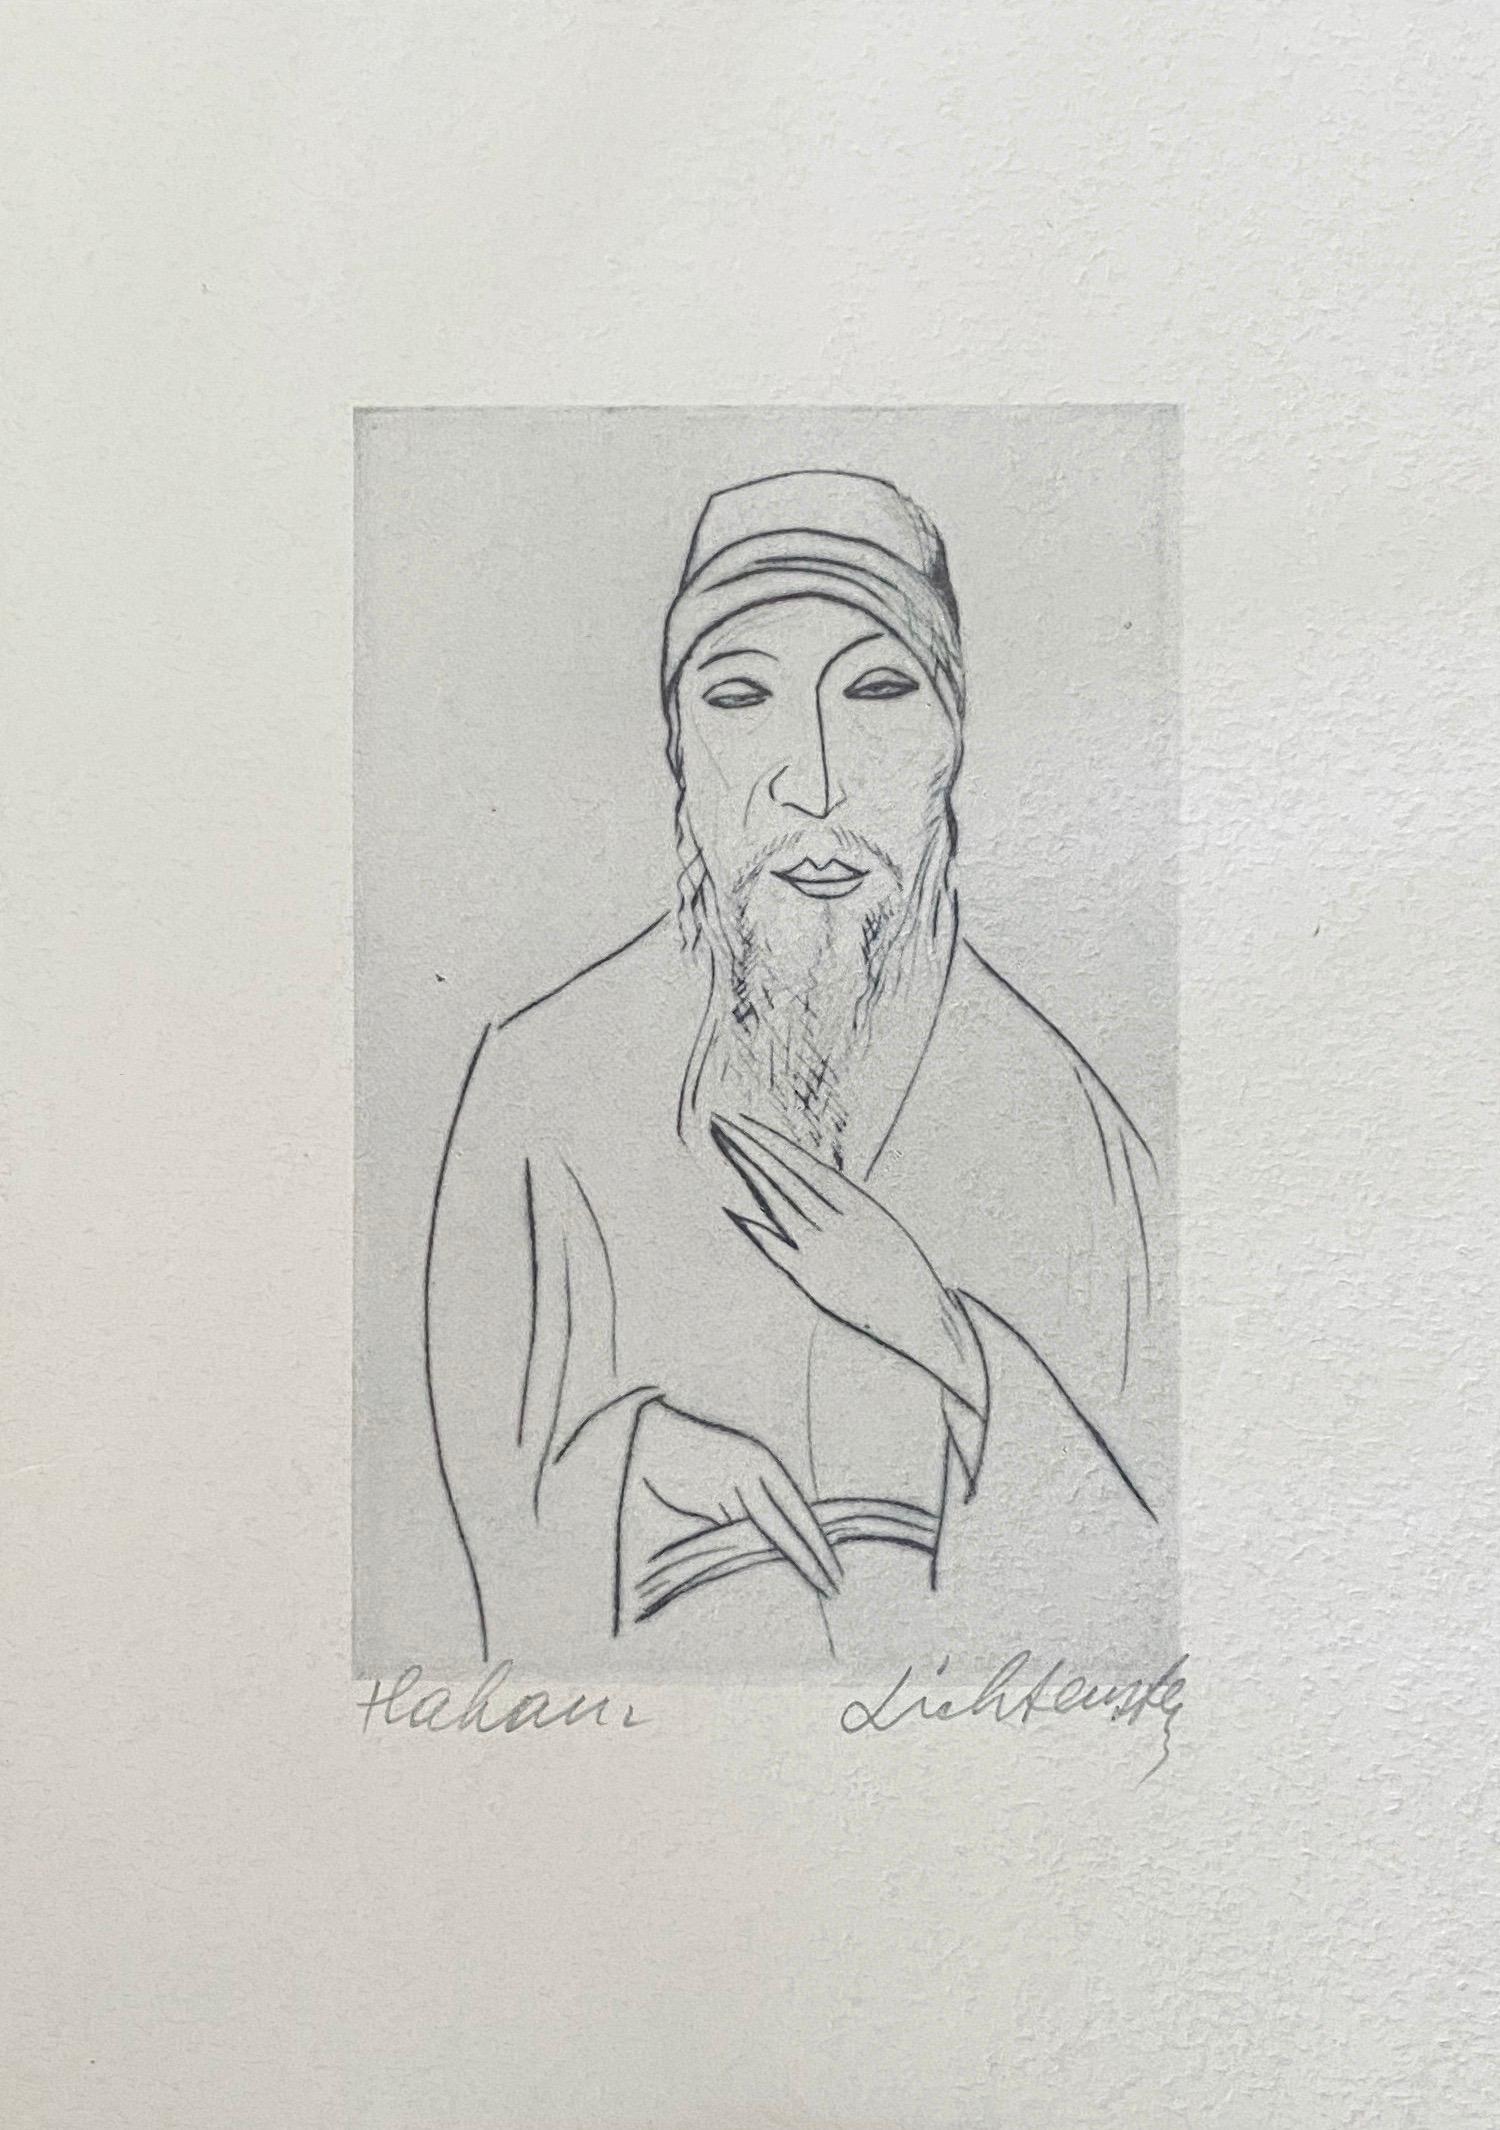 rabbi isaac lichtenstein